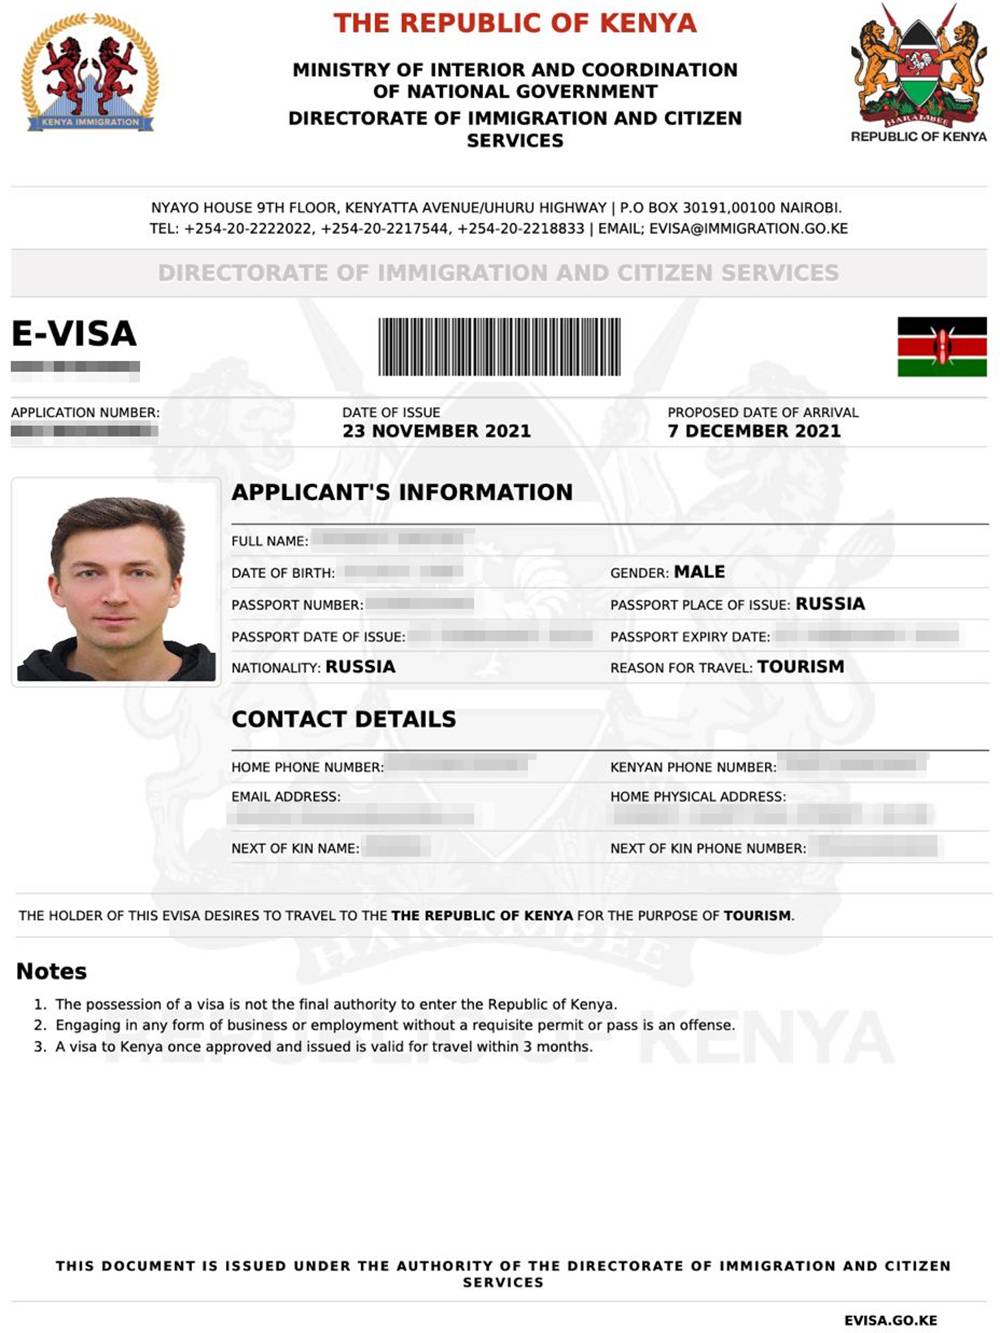 Так выглядит электронная виза в Кению